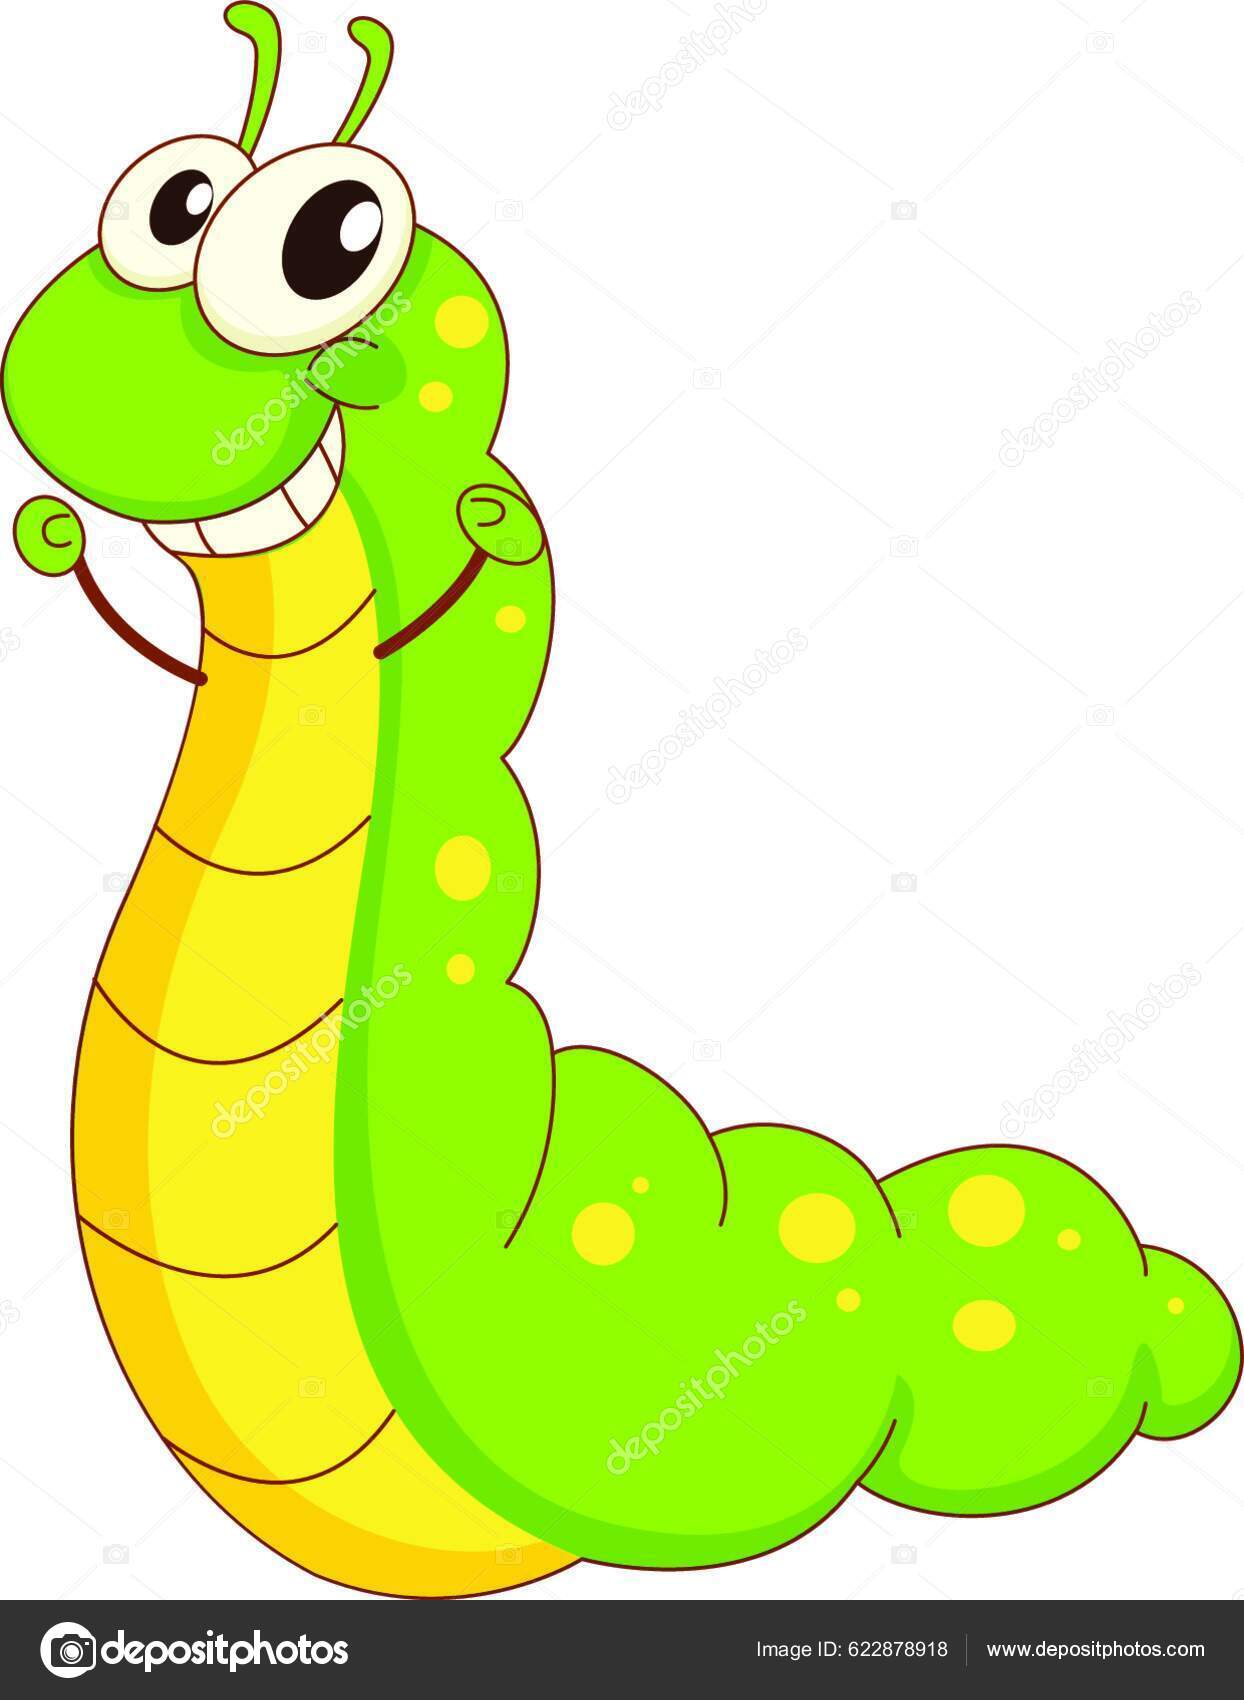 Cobra em estilo doodle, imagem linear única de uma serpente se contorcendo,  ícone de contorno